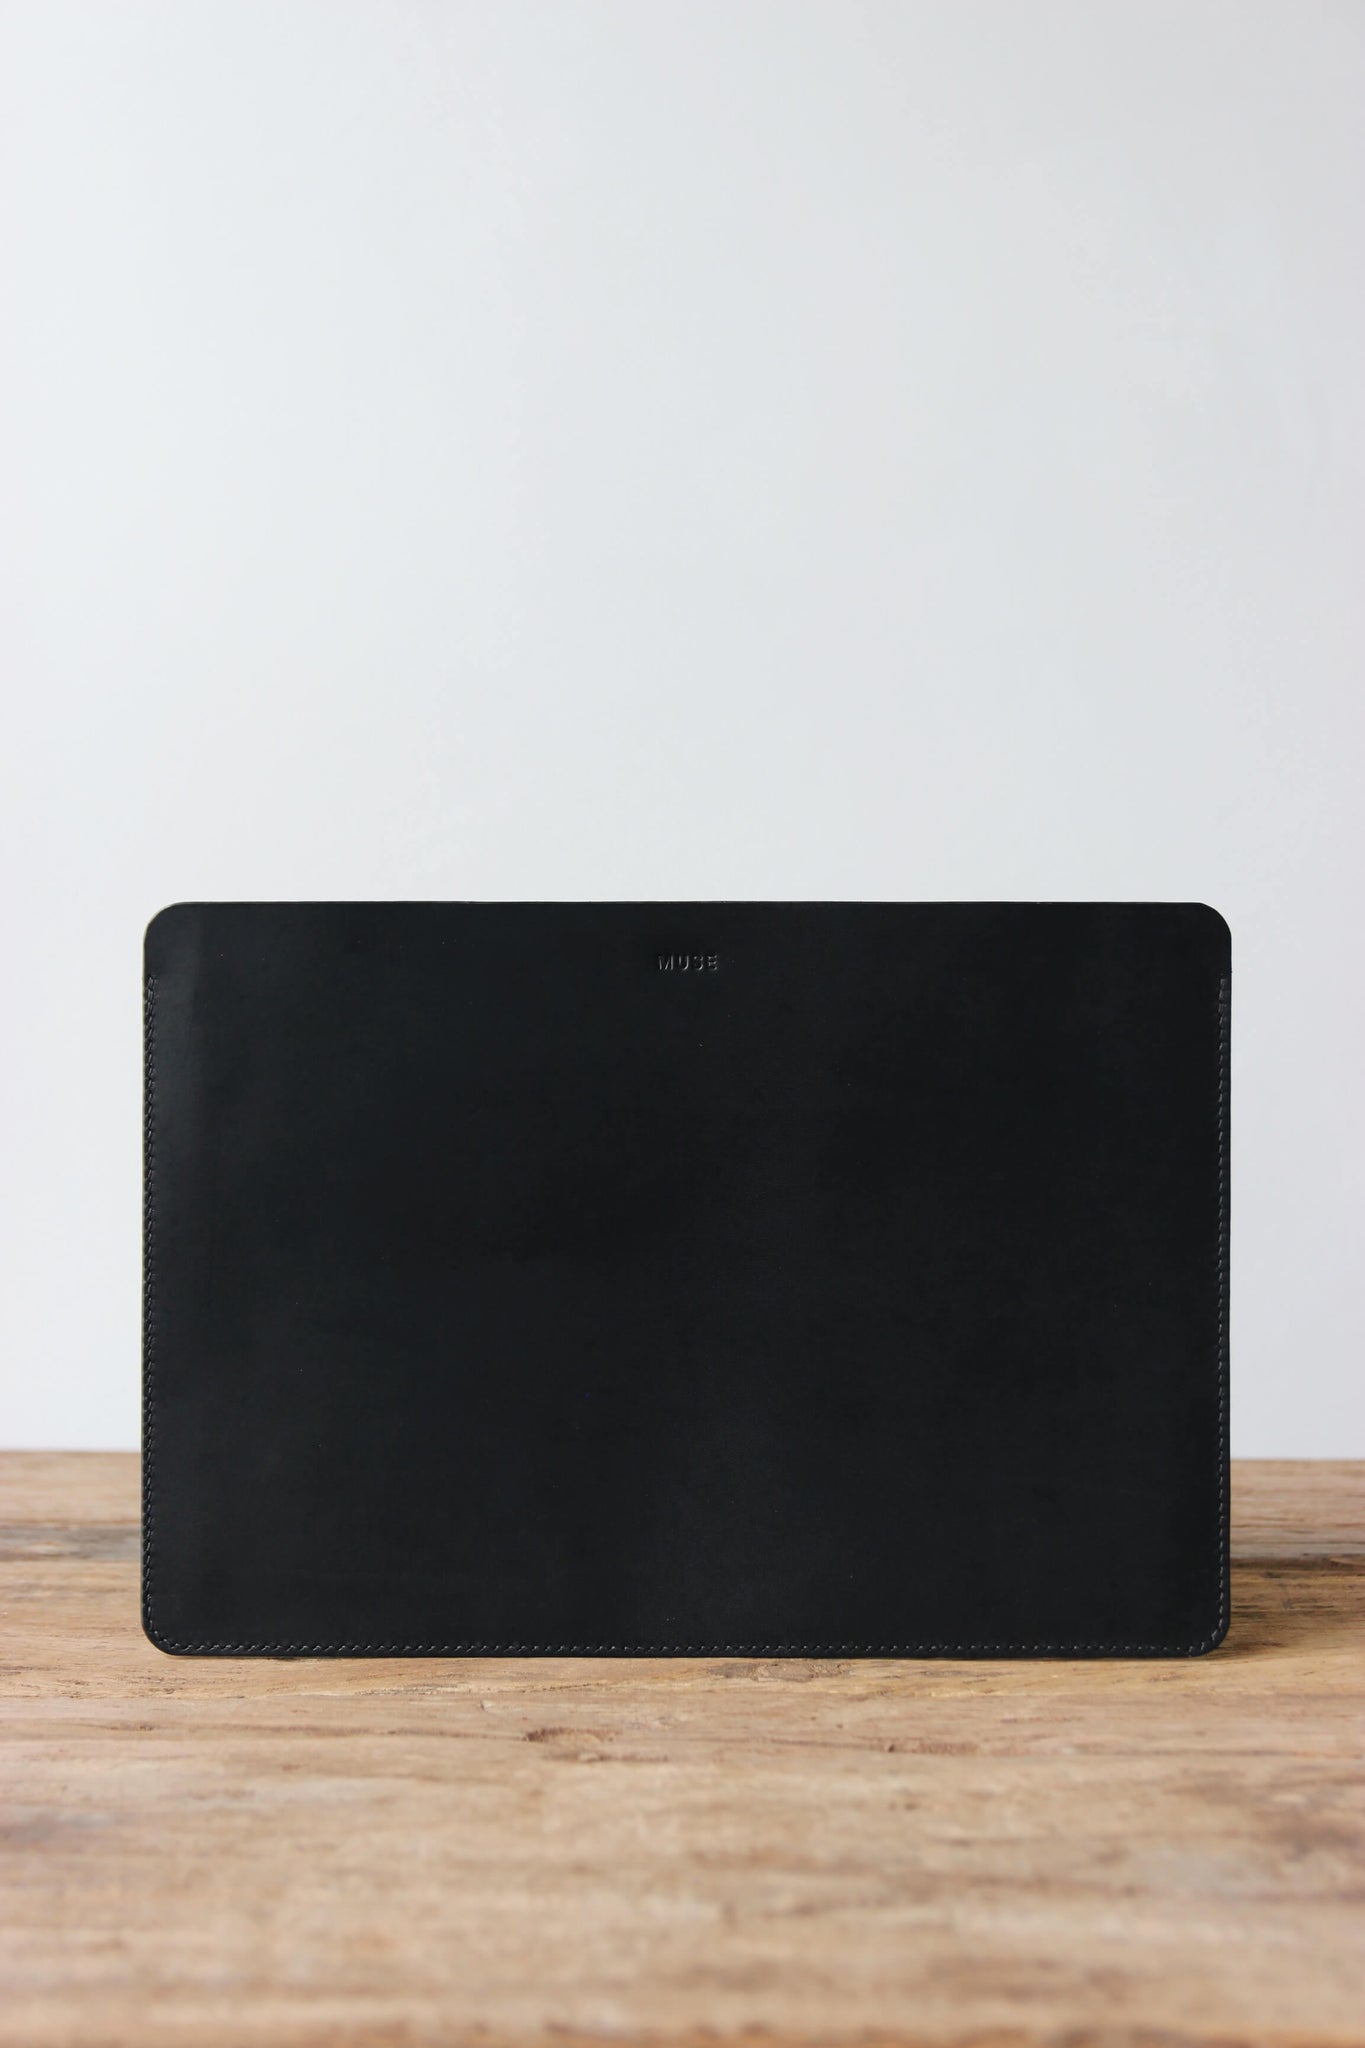 Eine Leder MacBook Hülle in Schwarz steht auf einem Holztisch.